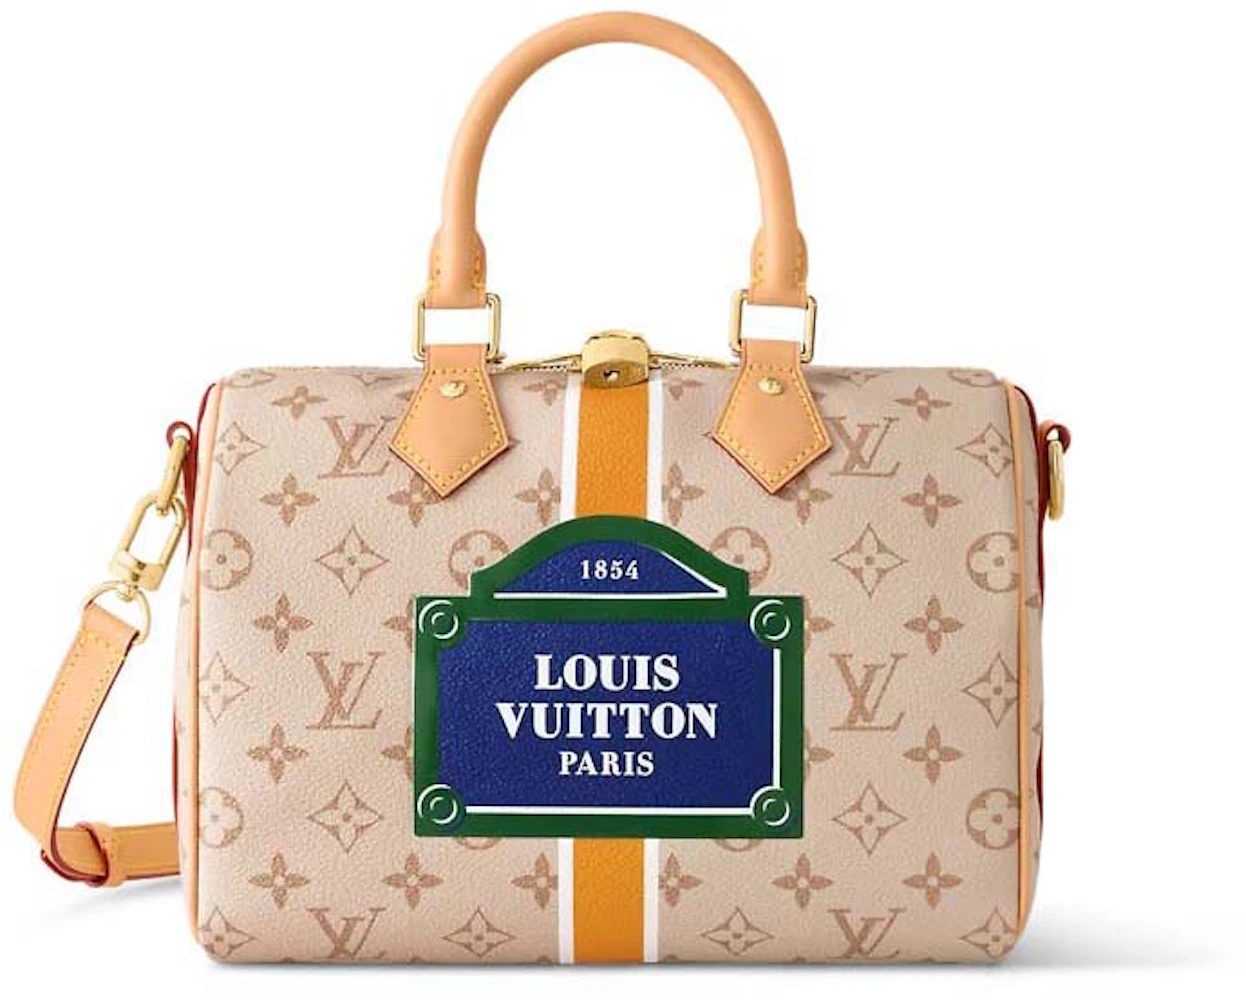 Louis Vuitton Speedy Bandouliere 25 Beige/Ocher in Monopaname